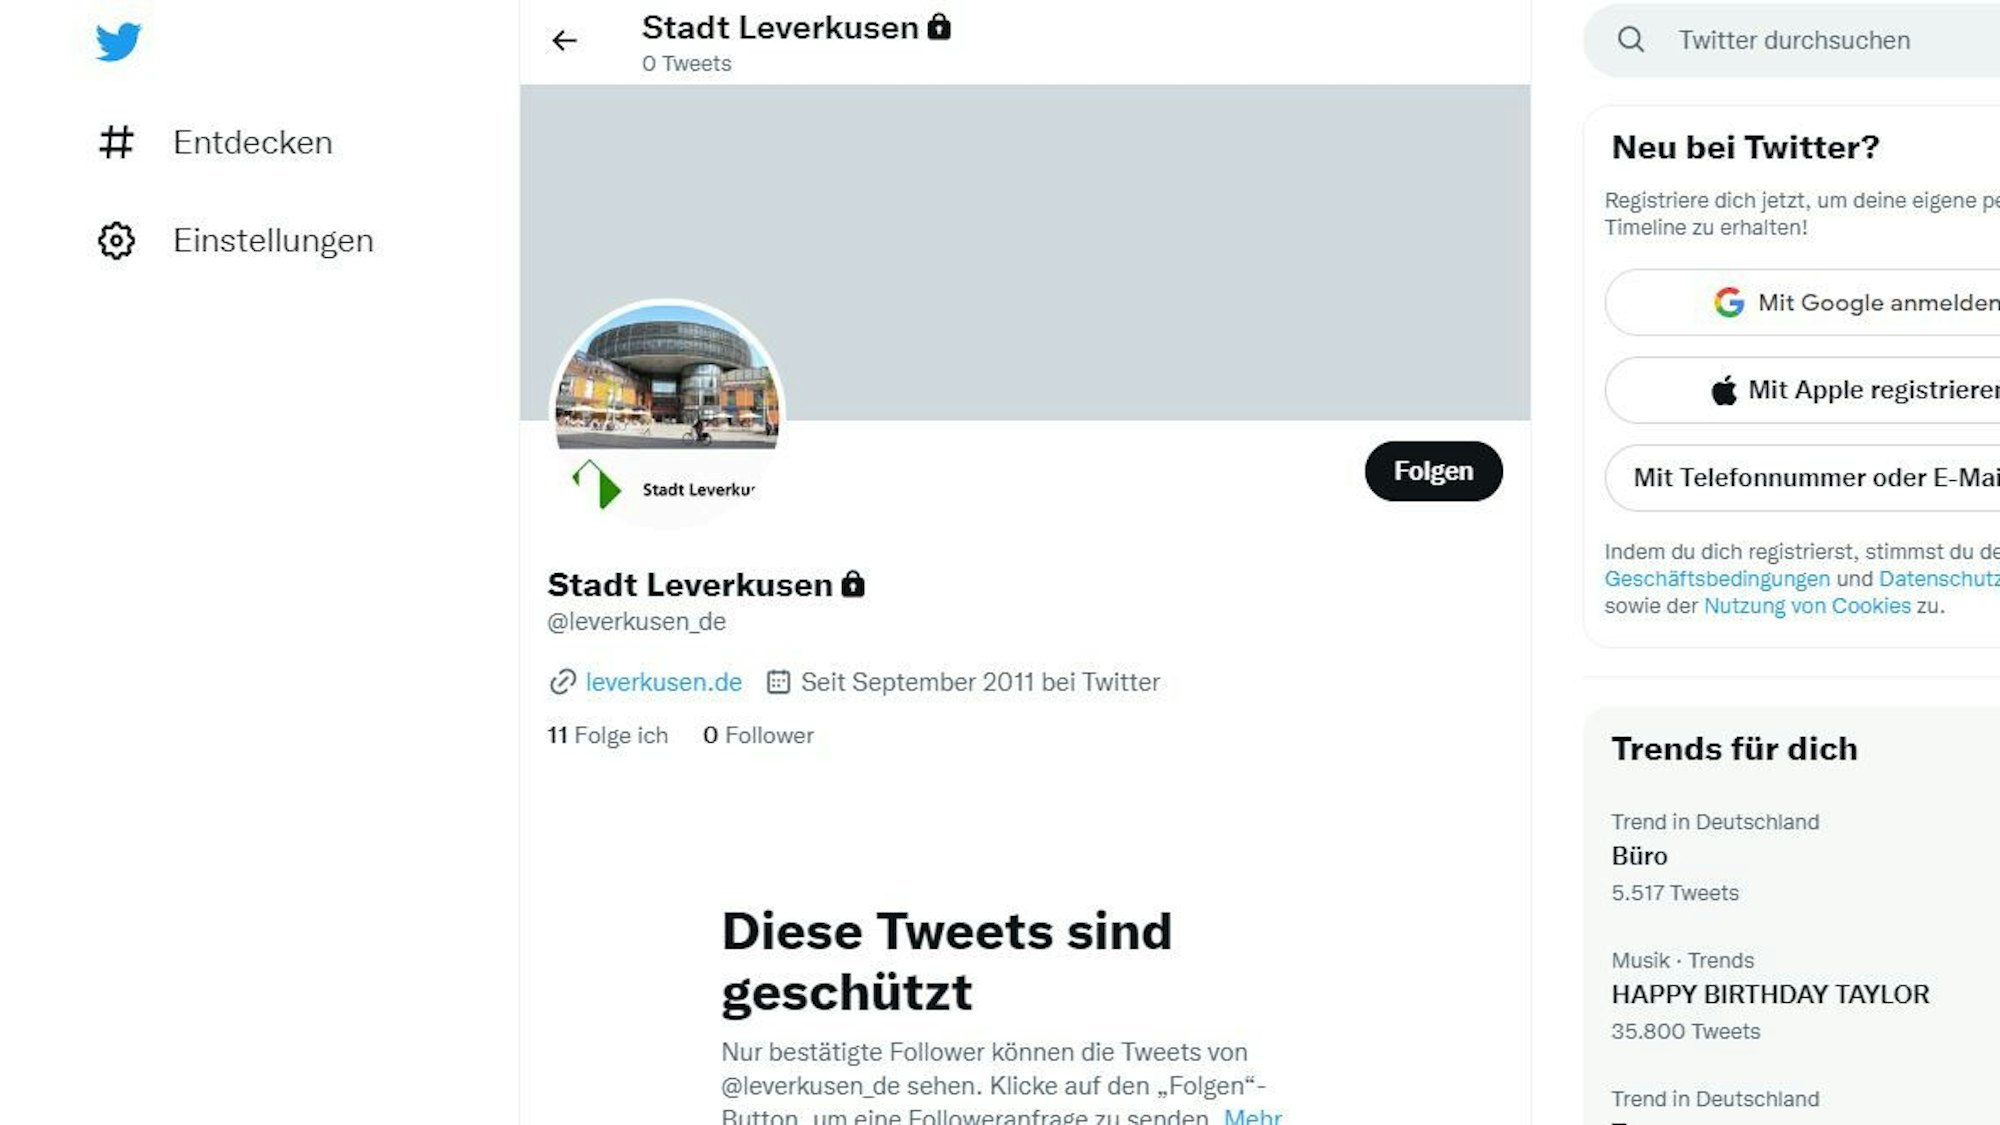 Screenshot von Twitter: Der städtische Account @Leverkusen_de ist zu sehen.